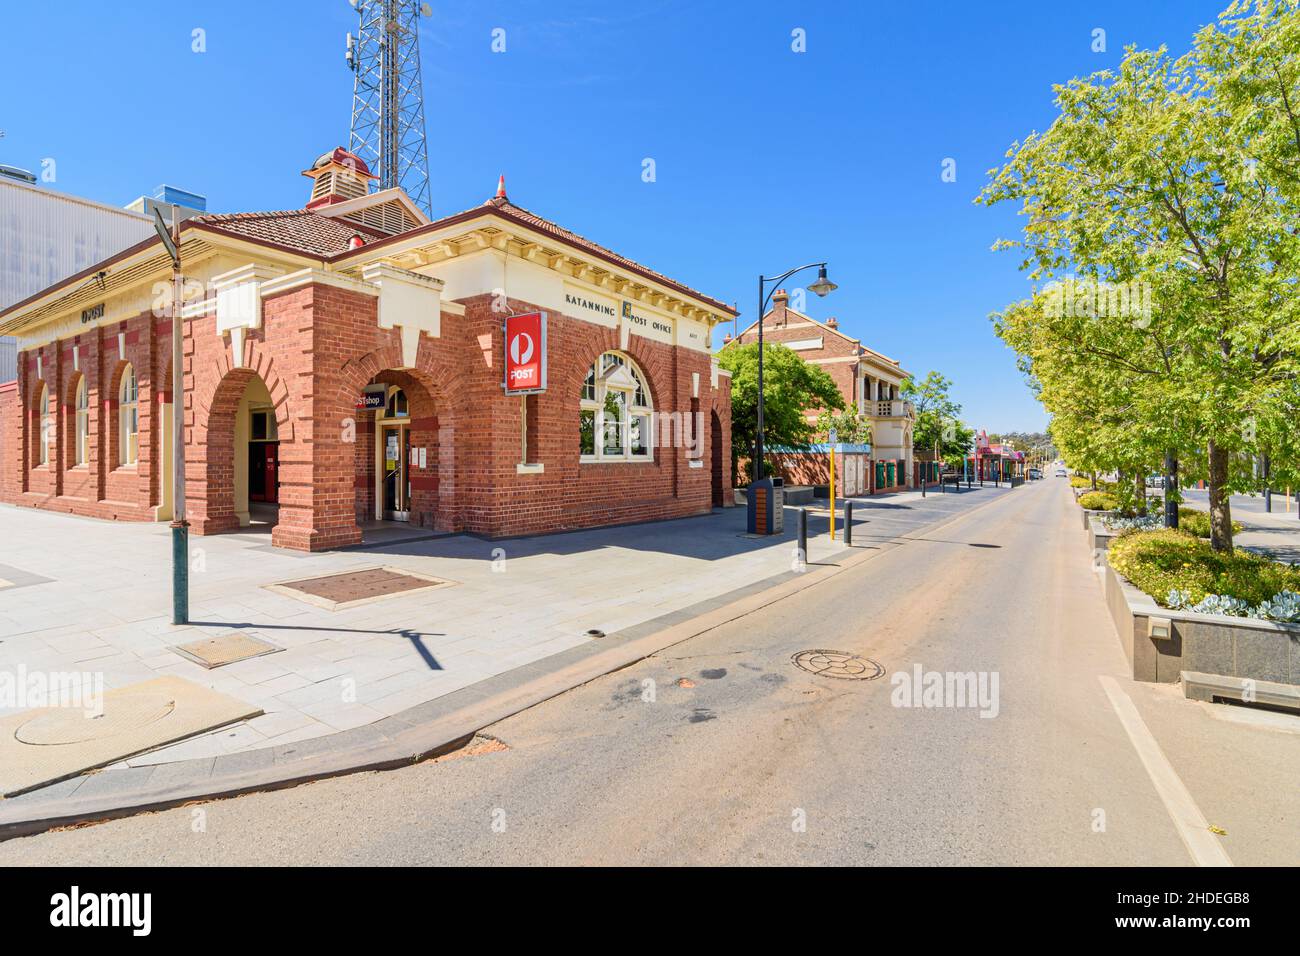 Bureau de poste de Katanning le long de Clive St, construit dans Federation Free style, dans la ville rurale de Katanning, Australie occidentale, Australie Banque D'Images